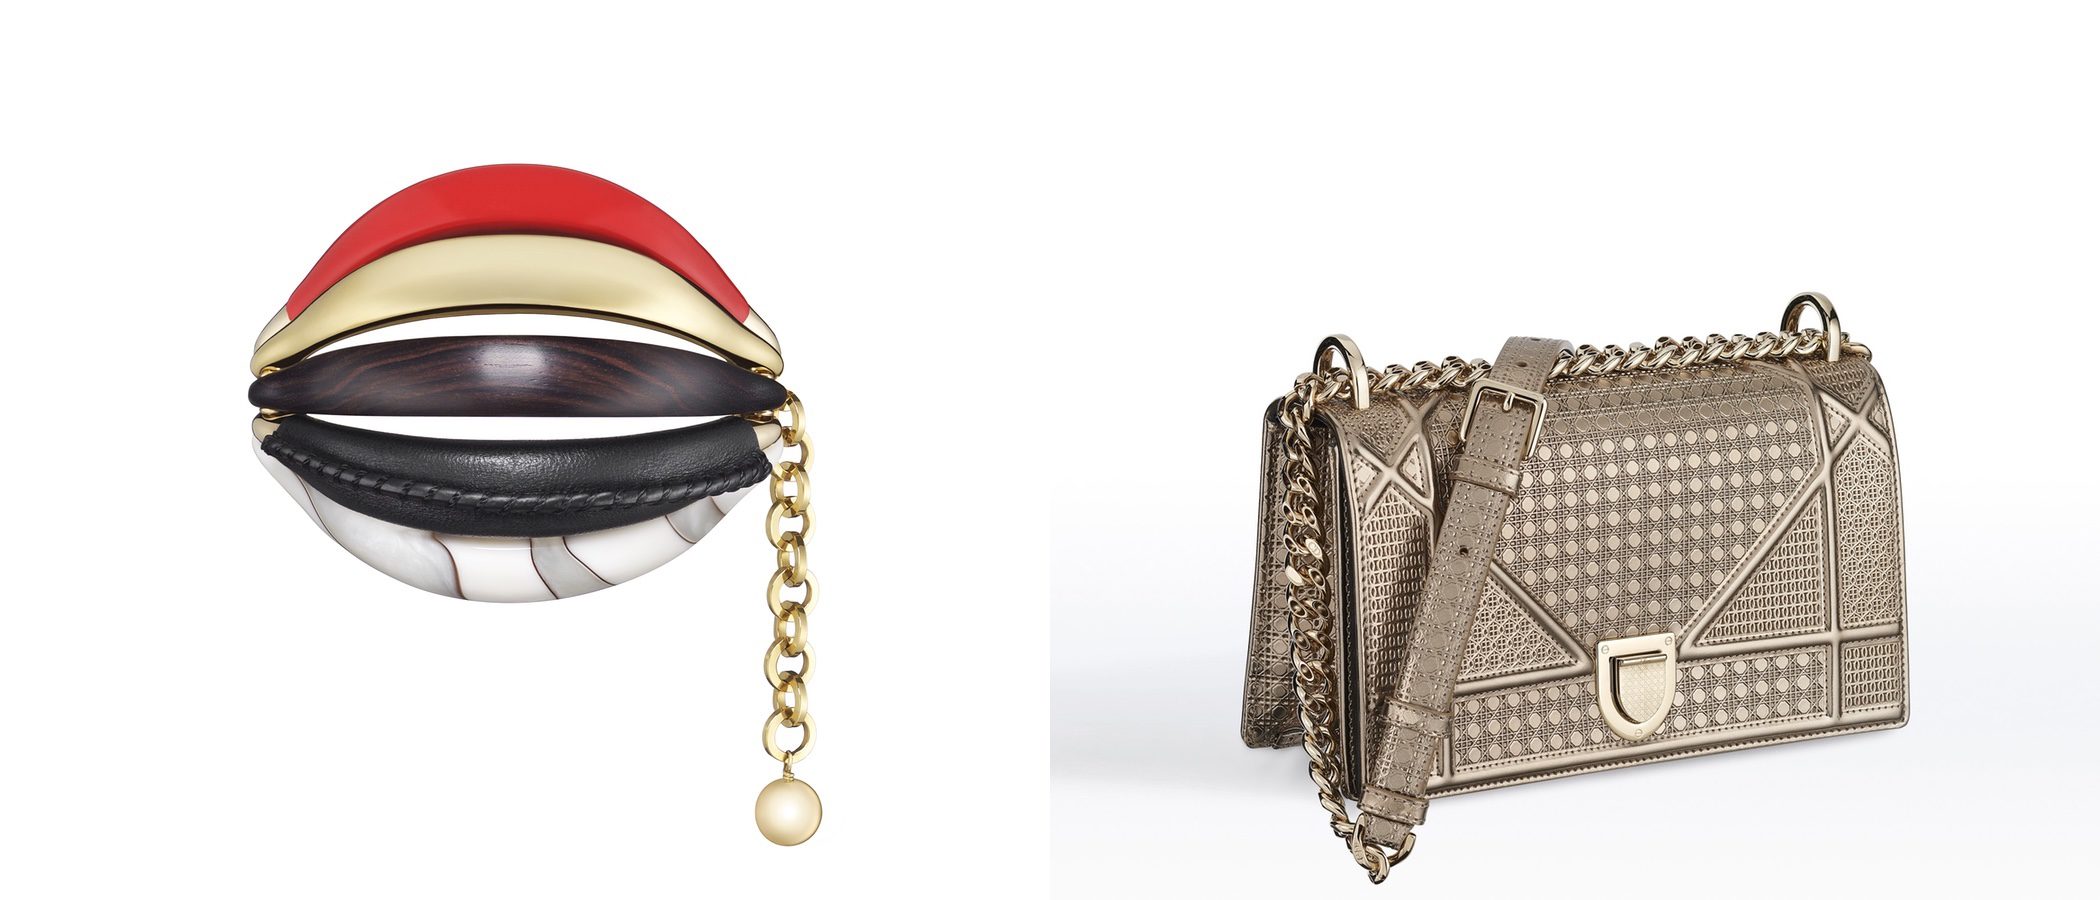 Dior selecciona los mejores accesorios de sus colecciones para Navidad 2016